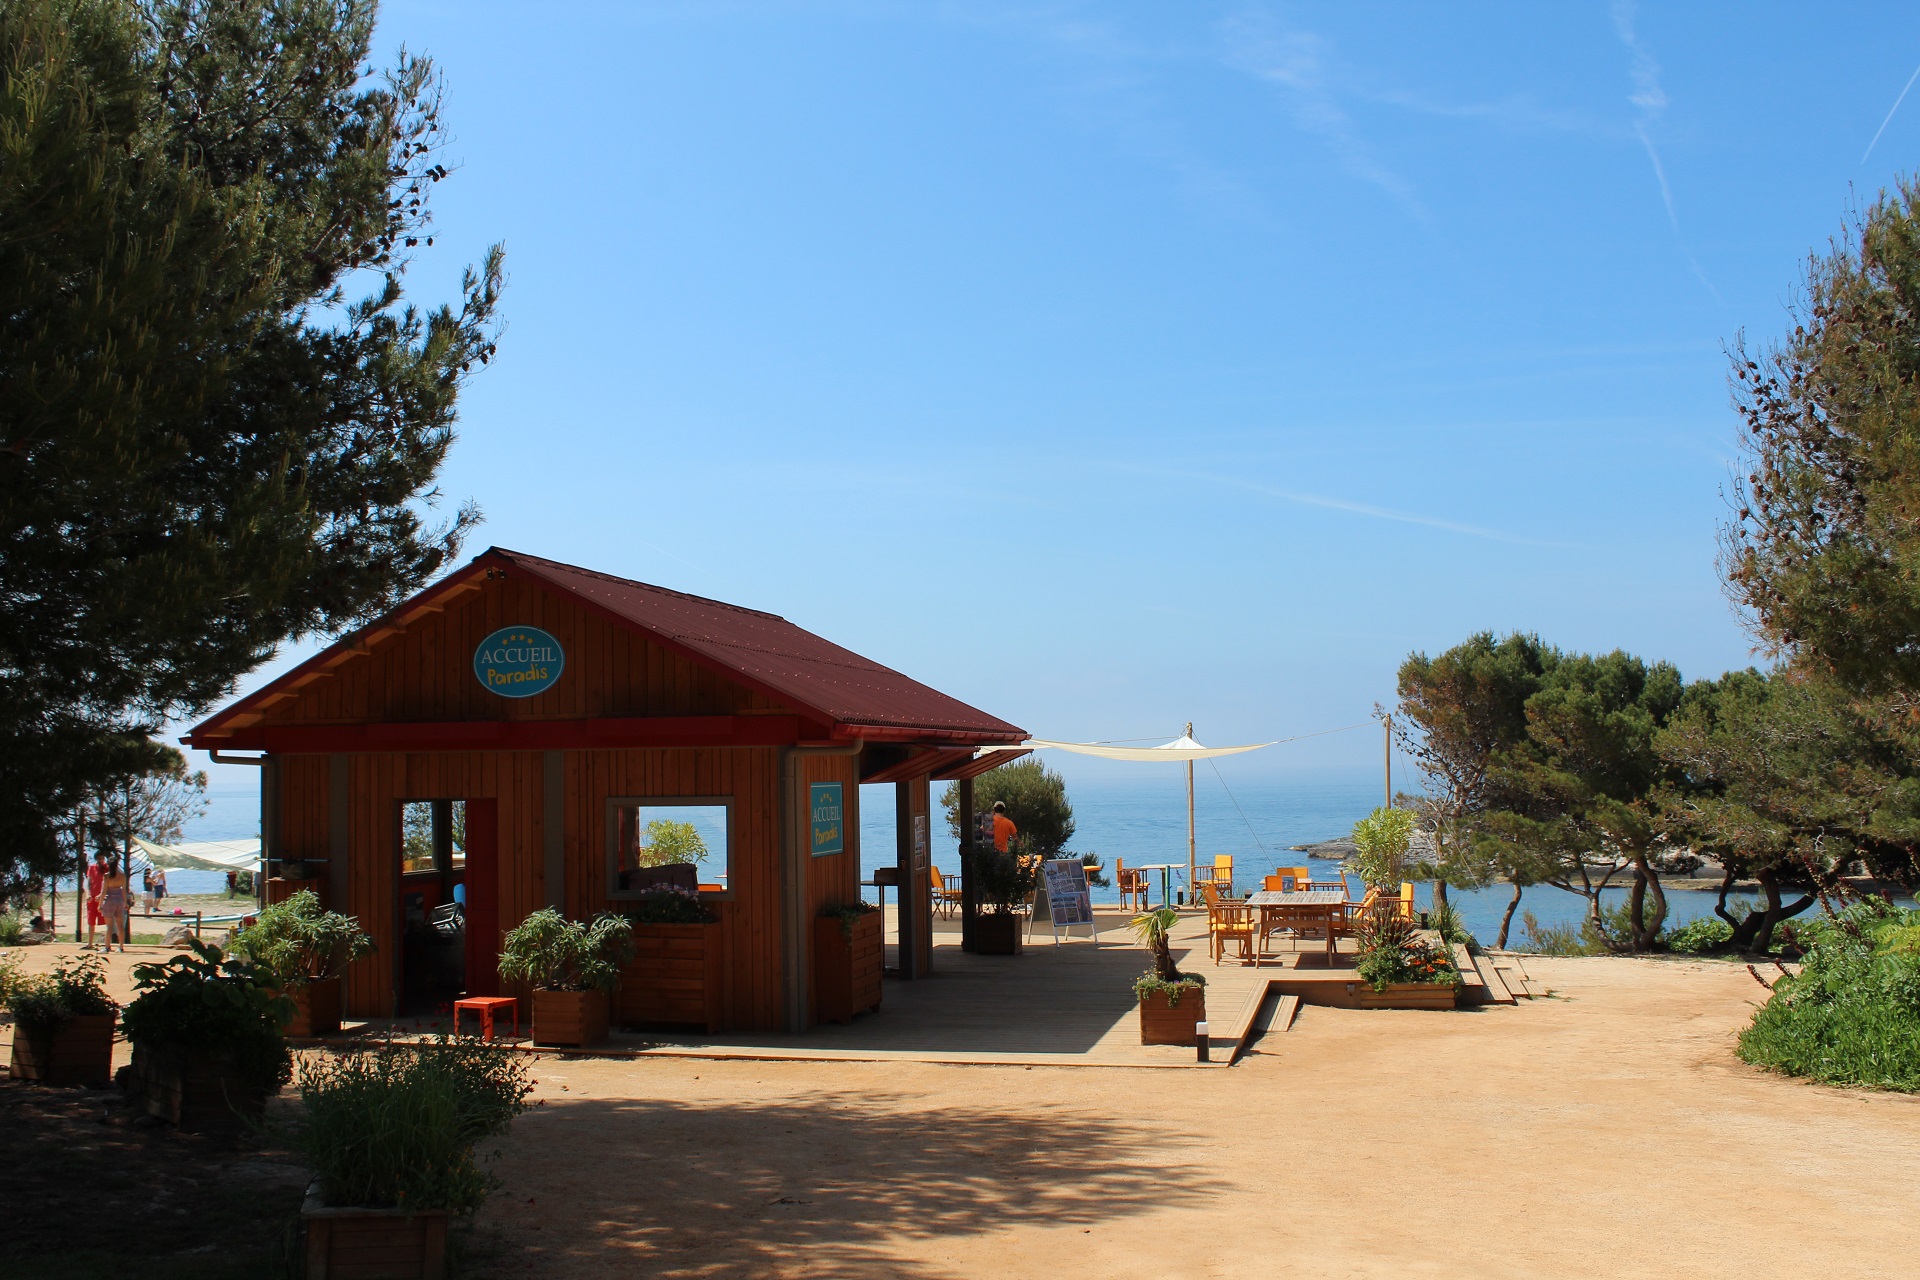 Lieu de tournage Camping Paradis - Martigues - © Otmartigues / ElodieM